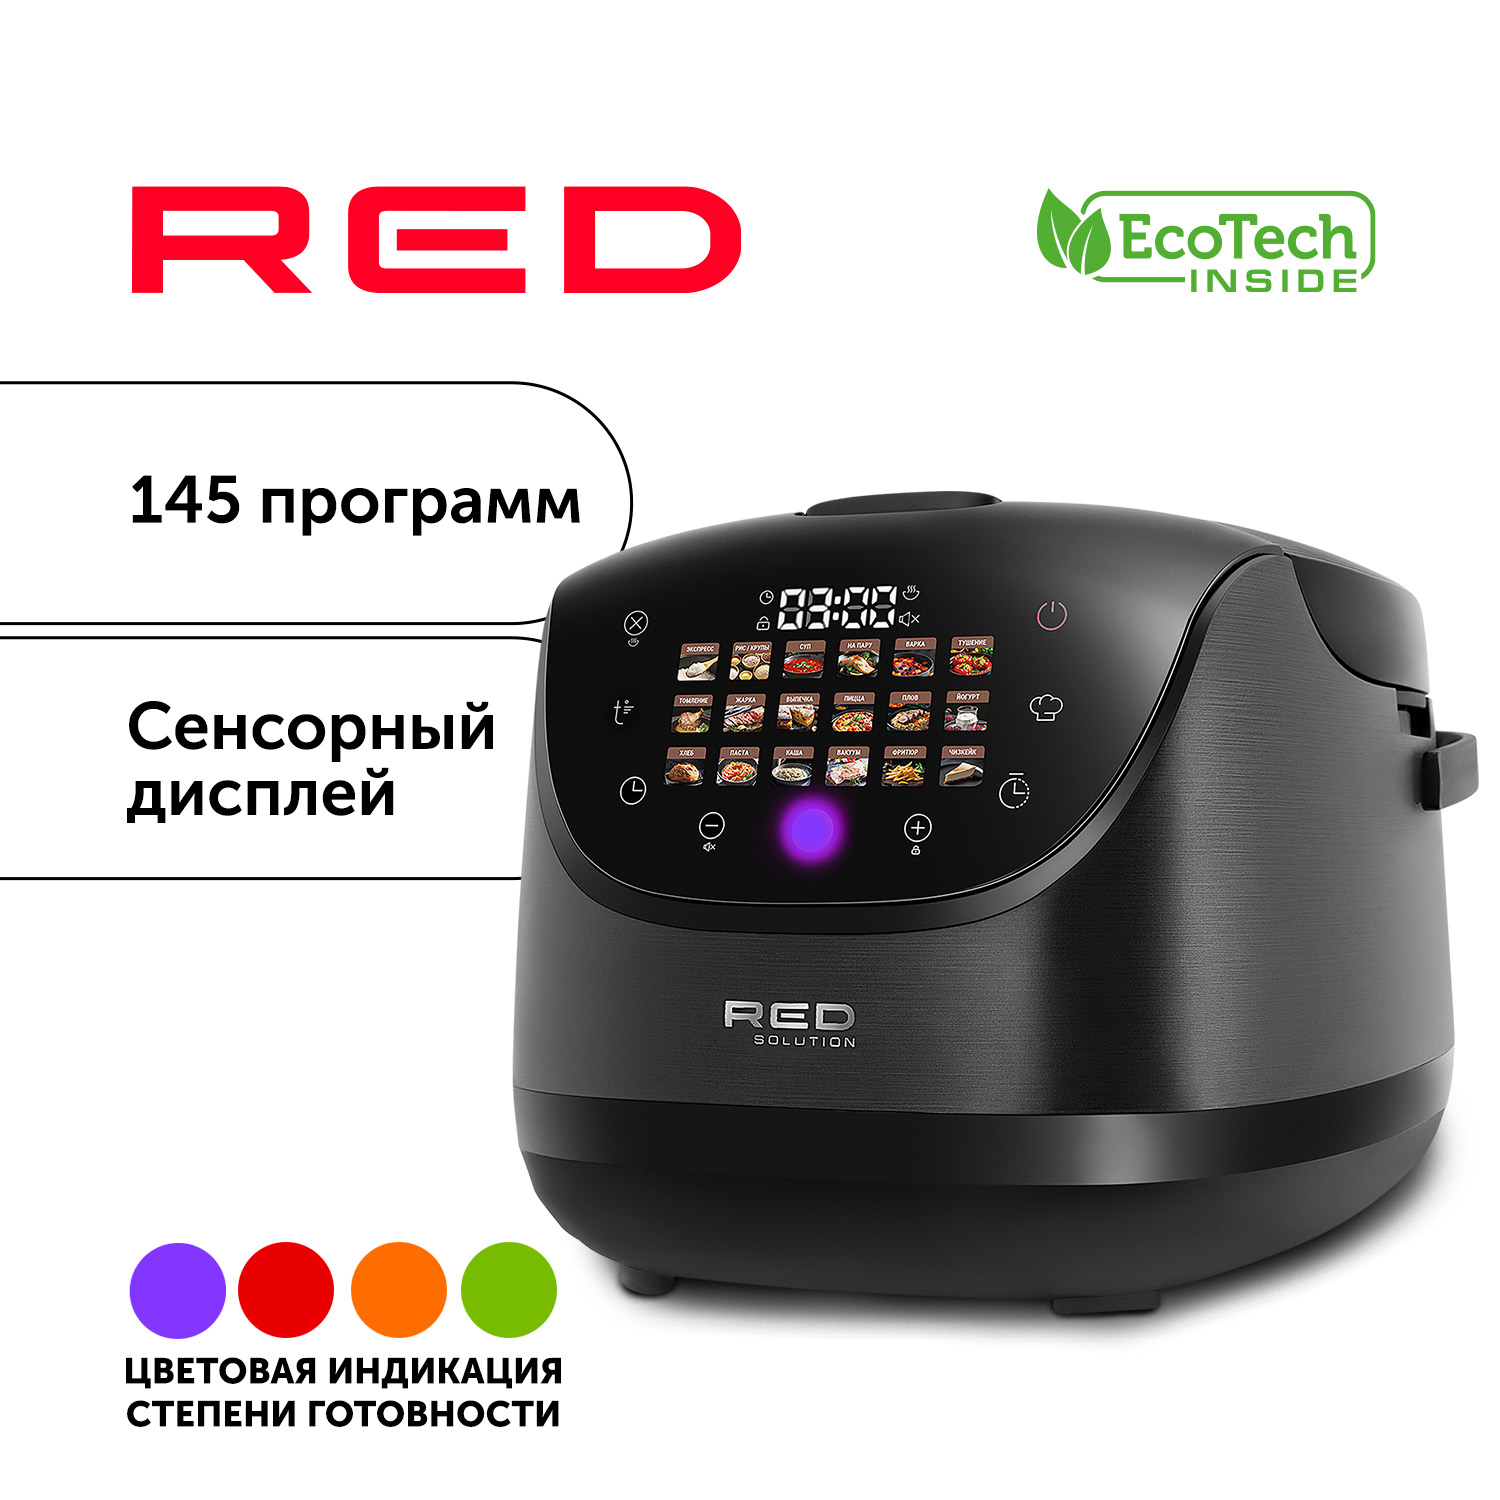 Мультиварка RED SOLUTION RMC-88 черный, купить в Москве, цены в интернет-магазинах на Мегамаркет